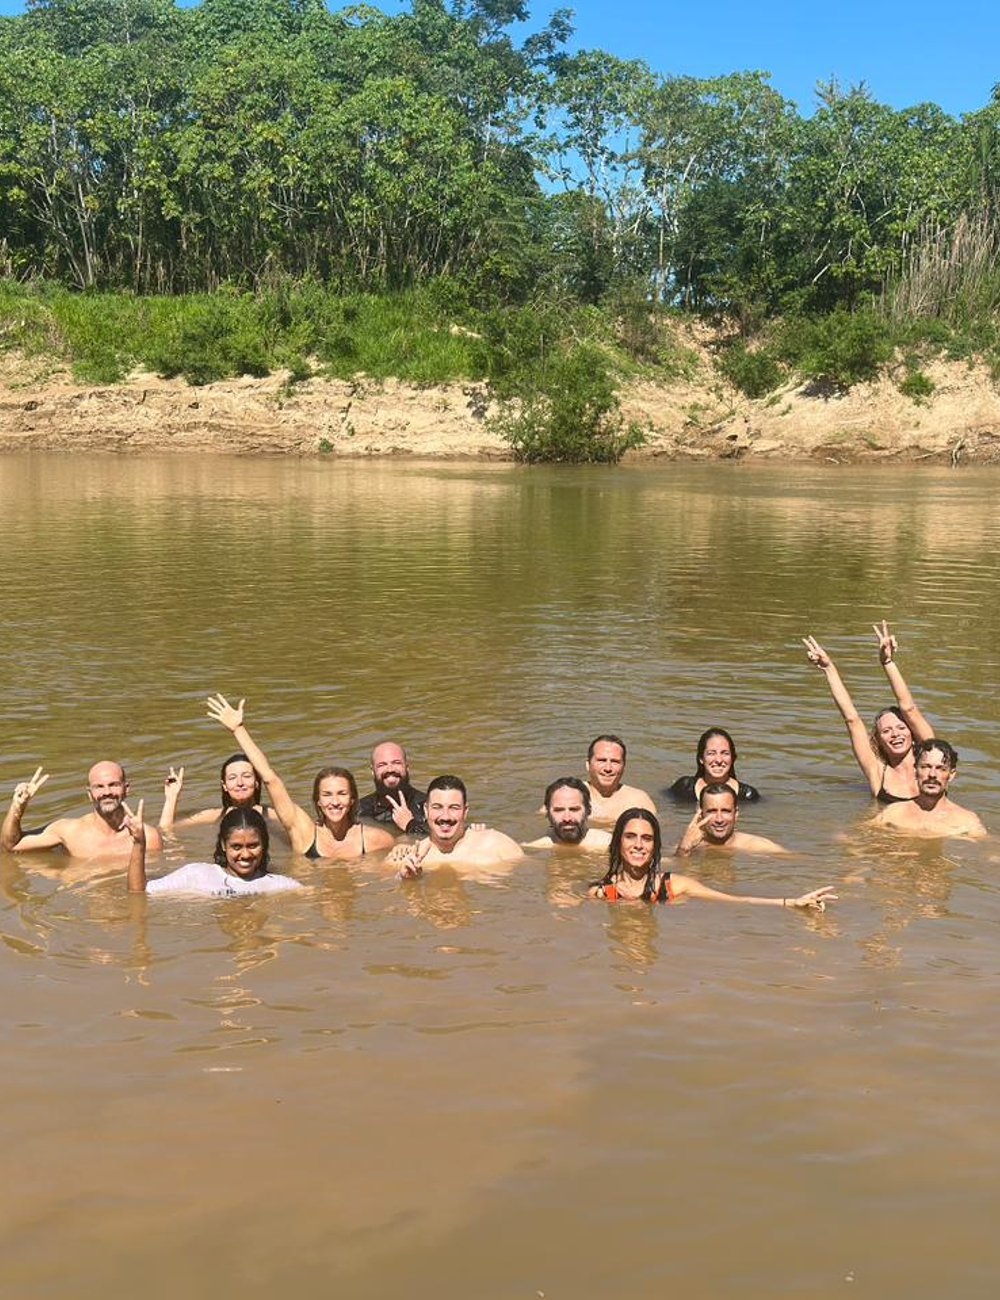 Banho no Rio Acre - Amazônia - Amazônia - Amazônia - Amazônia - https://stealthelook.com.br